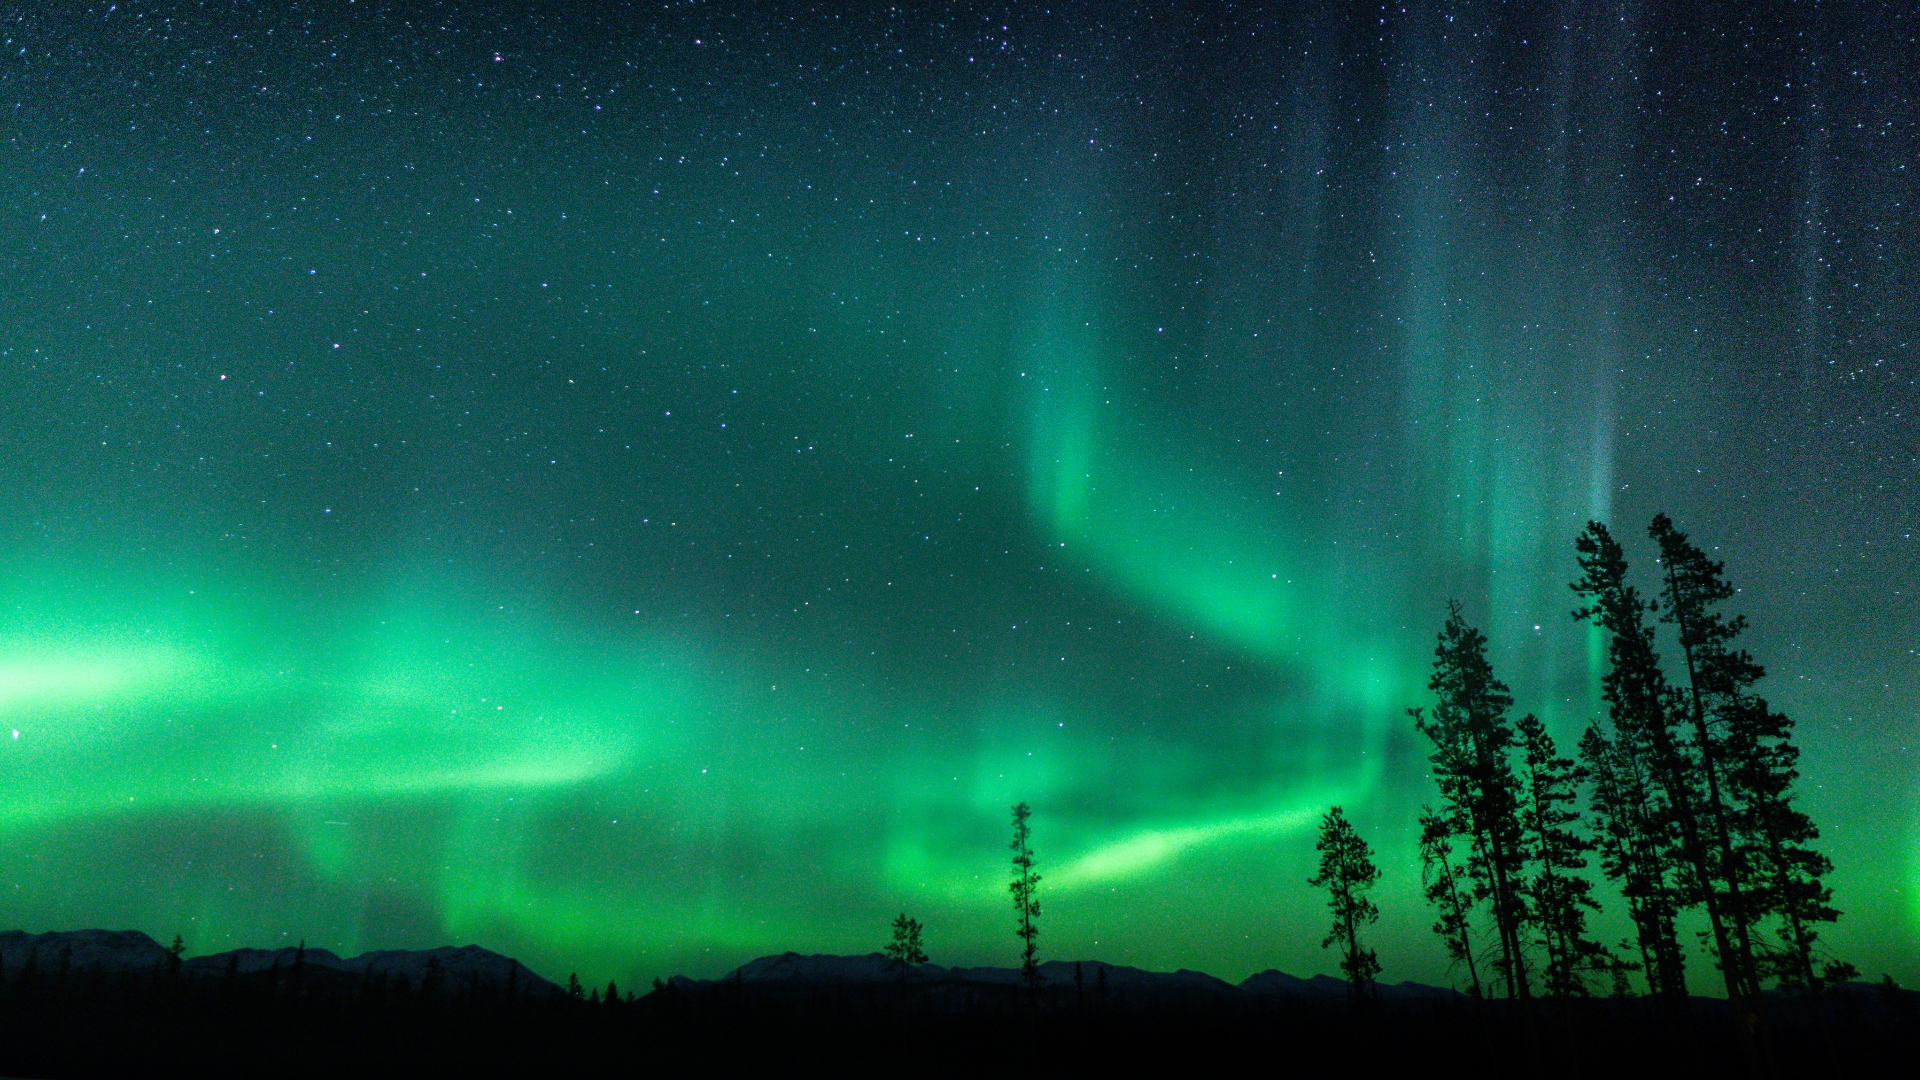 Tormenta geomagnética: ¿serán visibles las auroras boreales en California?